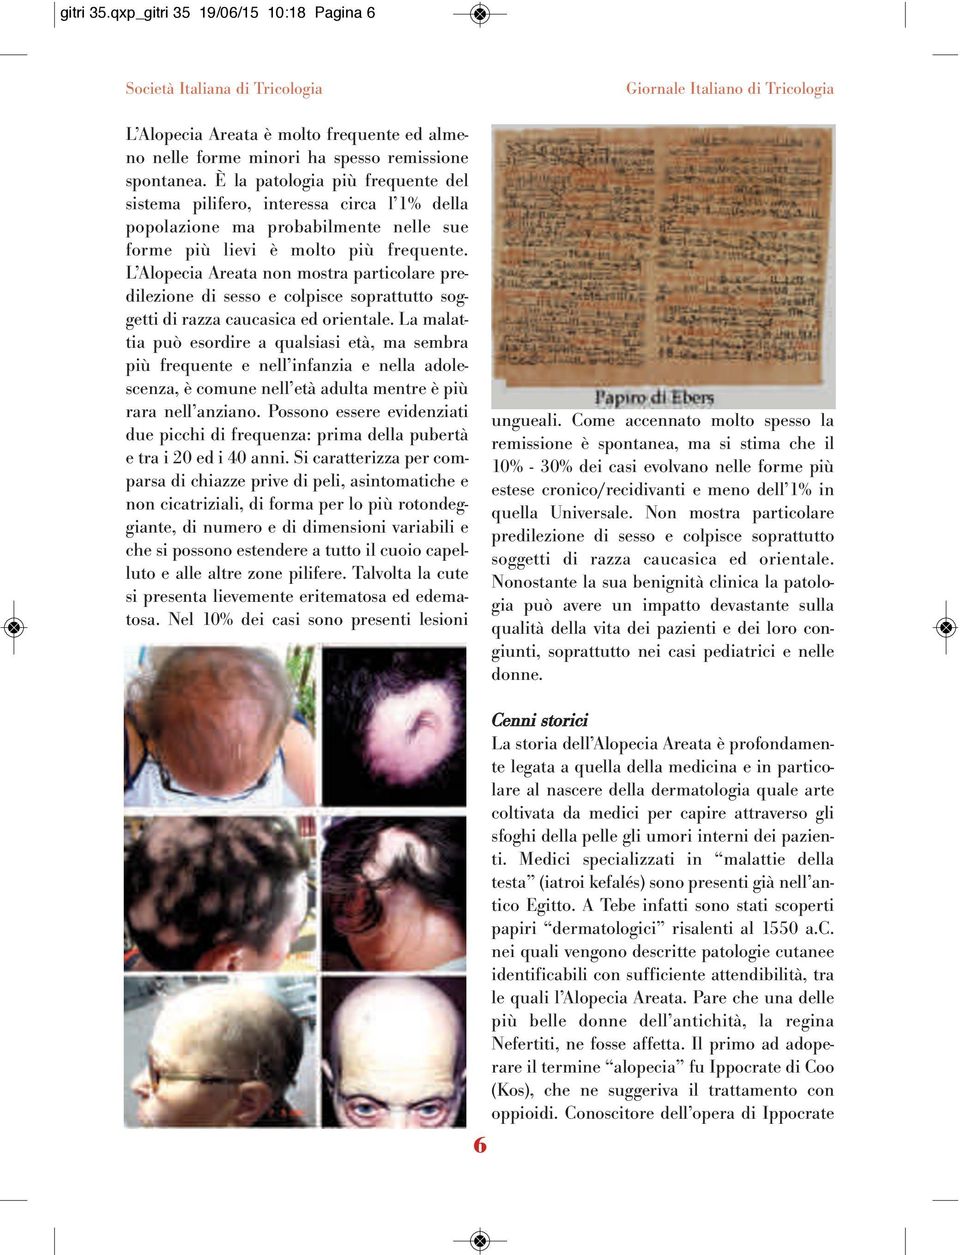 L Alopecia Areata non mostra particolare predilezione di sesso e colpisce soprattutto soggetti di razza caucasica ed orientale.